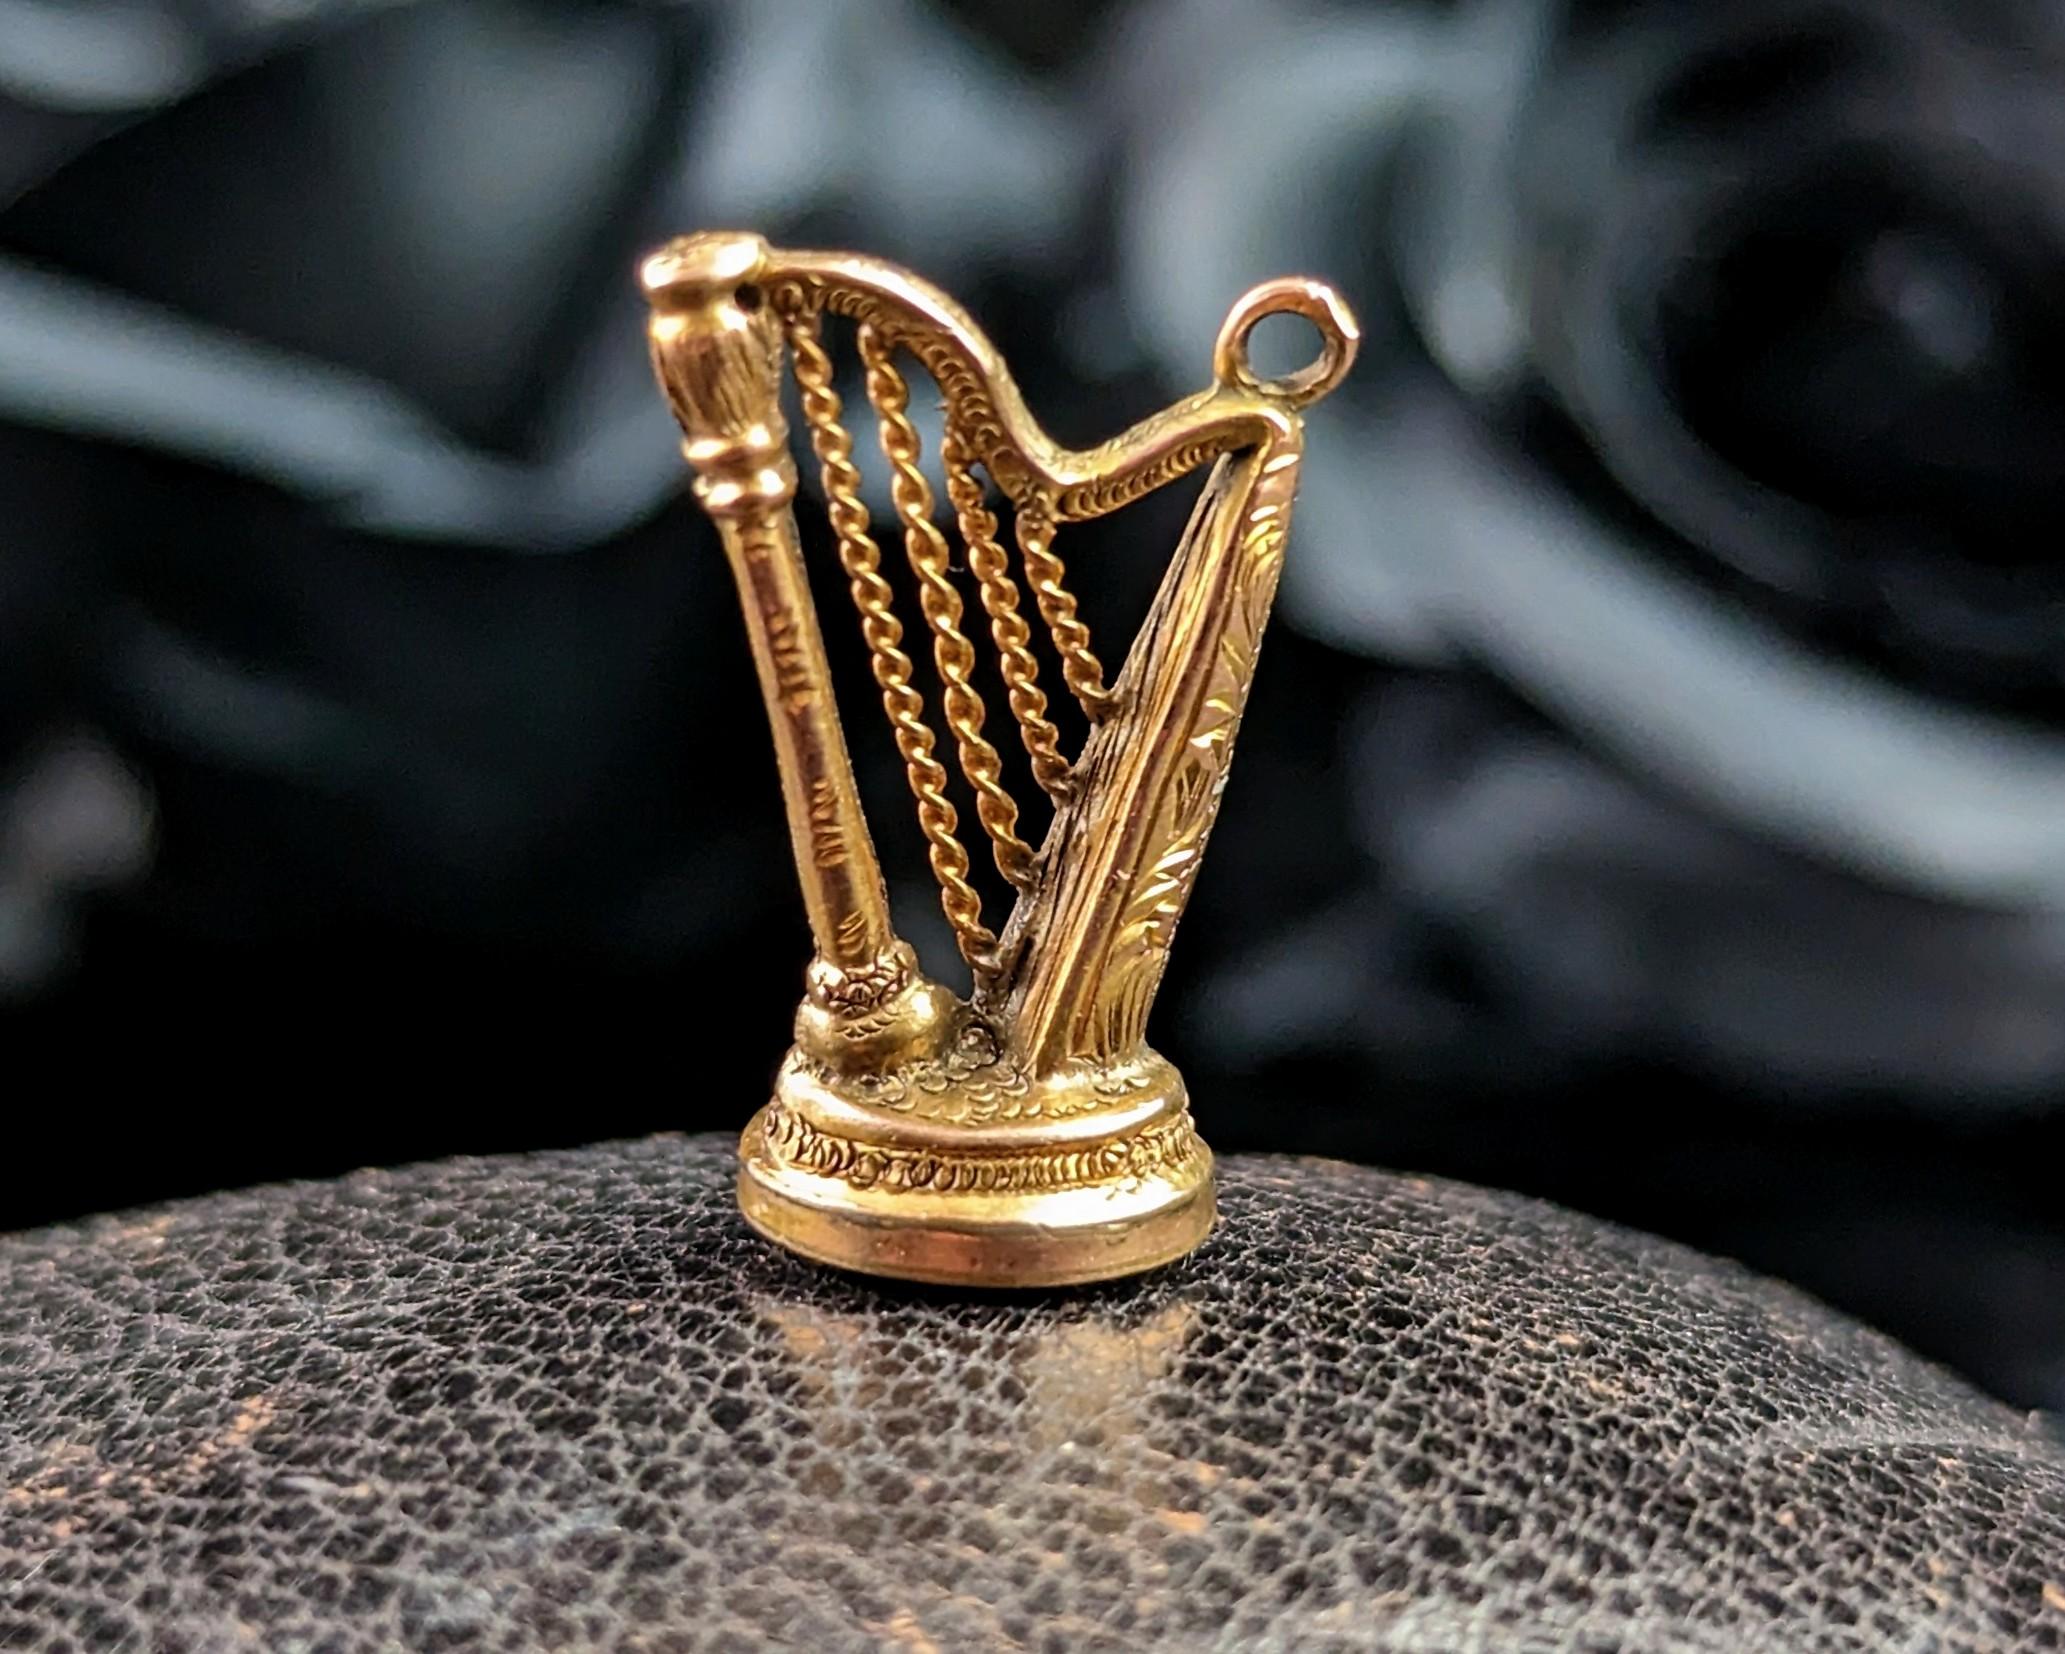 Ce petit pendentif en or pour phoque est tellement amusant !

Magnifiquement modelée comme une harpe avec un design fantaisie en or jaune 9 carats, la base est sertie d'une matrice de pierre rouge sanguine polie et lisse.

La matrice n'est pas